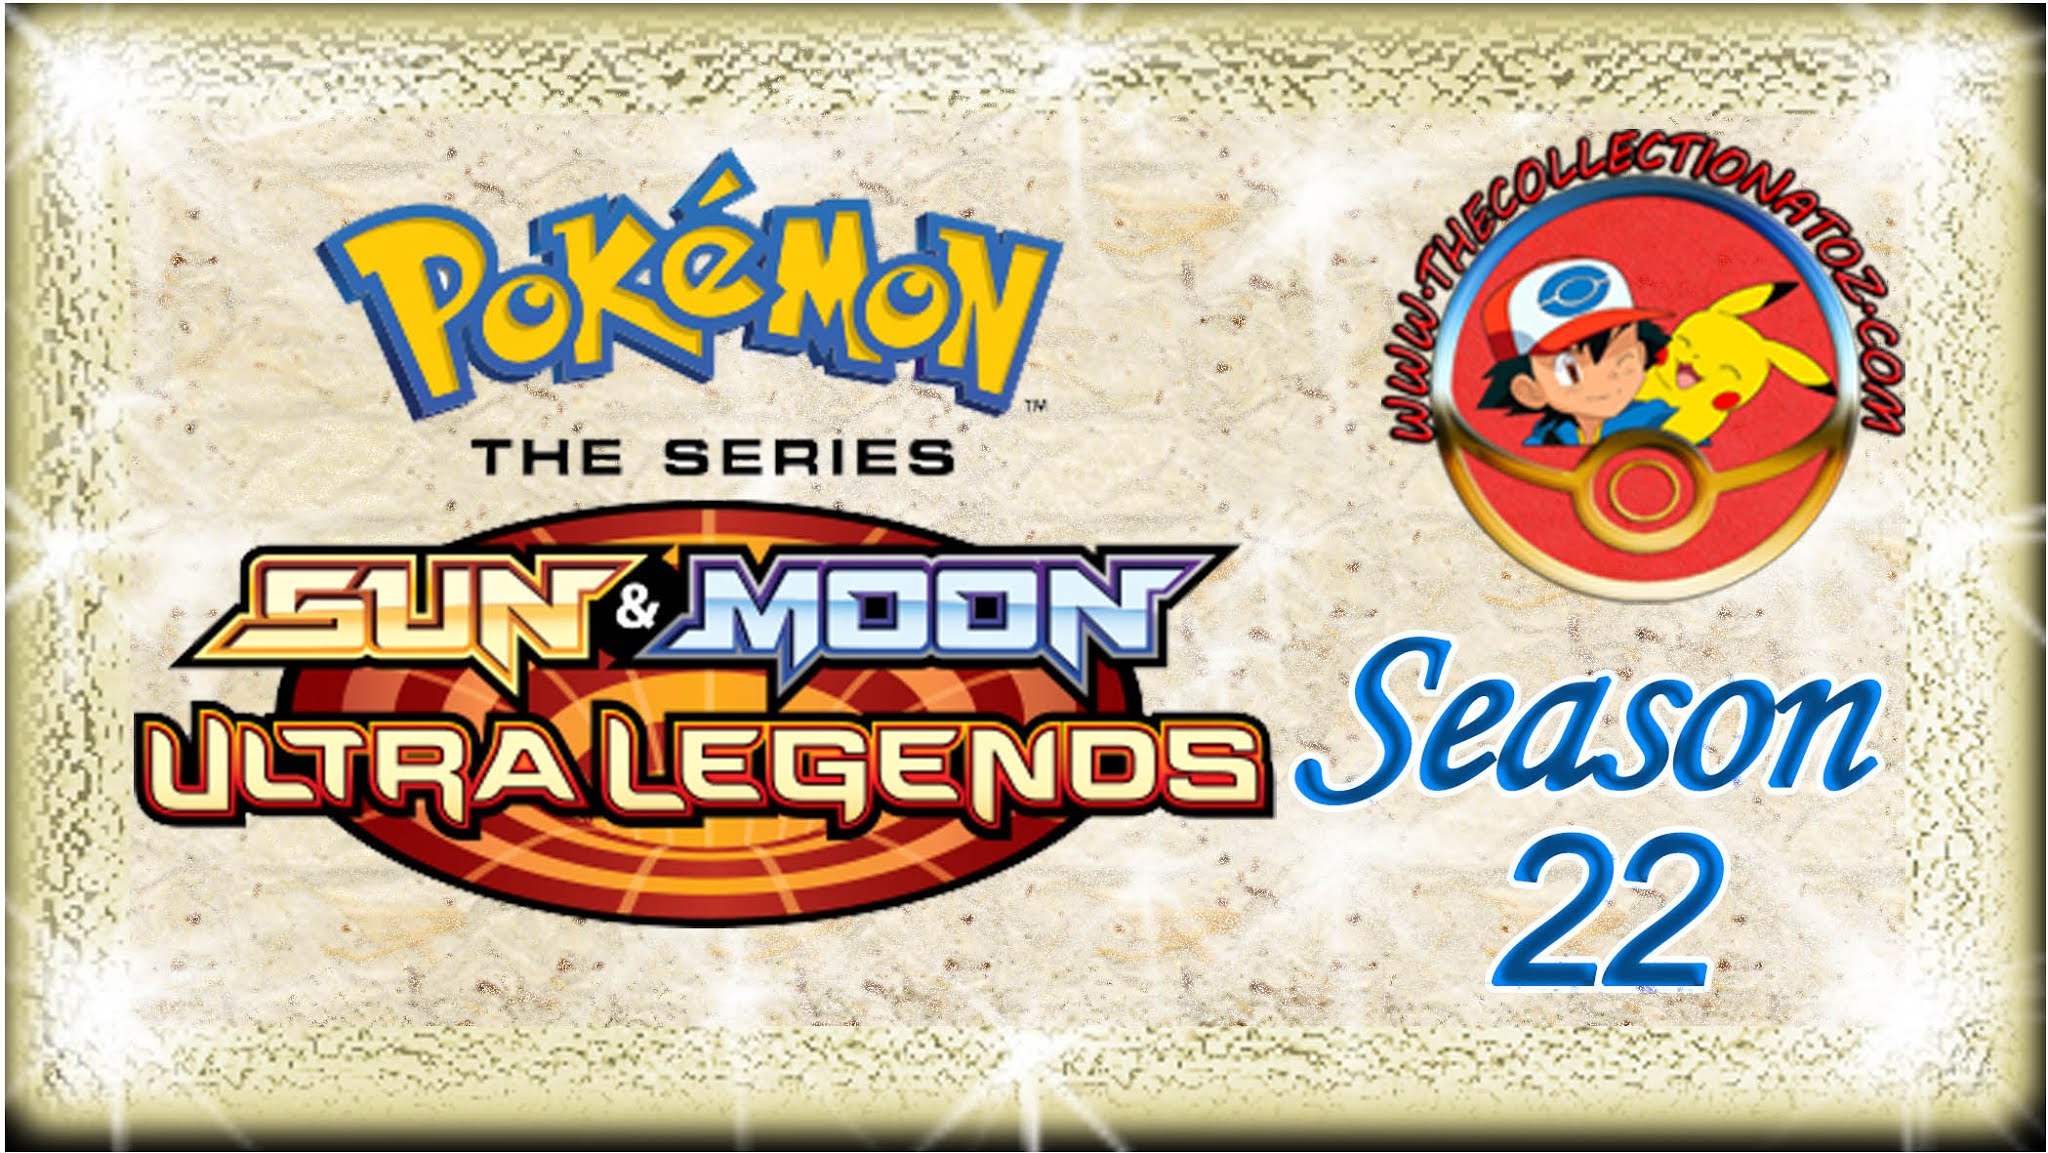 Pokemon The Series: Sun & Moon - Ultra Legends (Season 22)